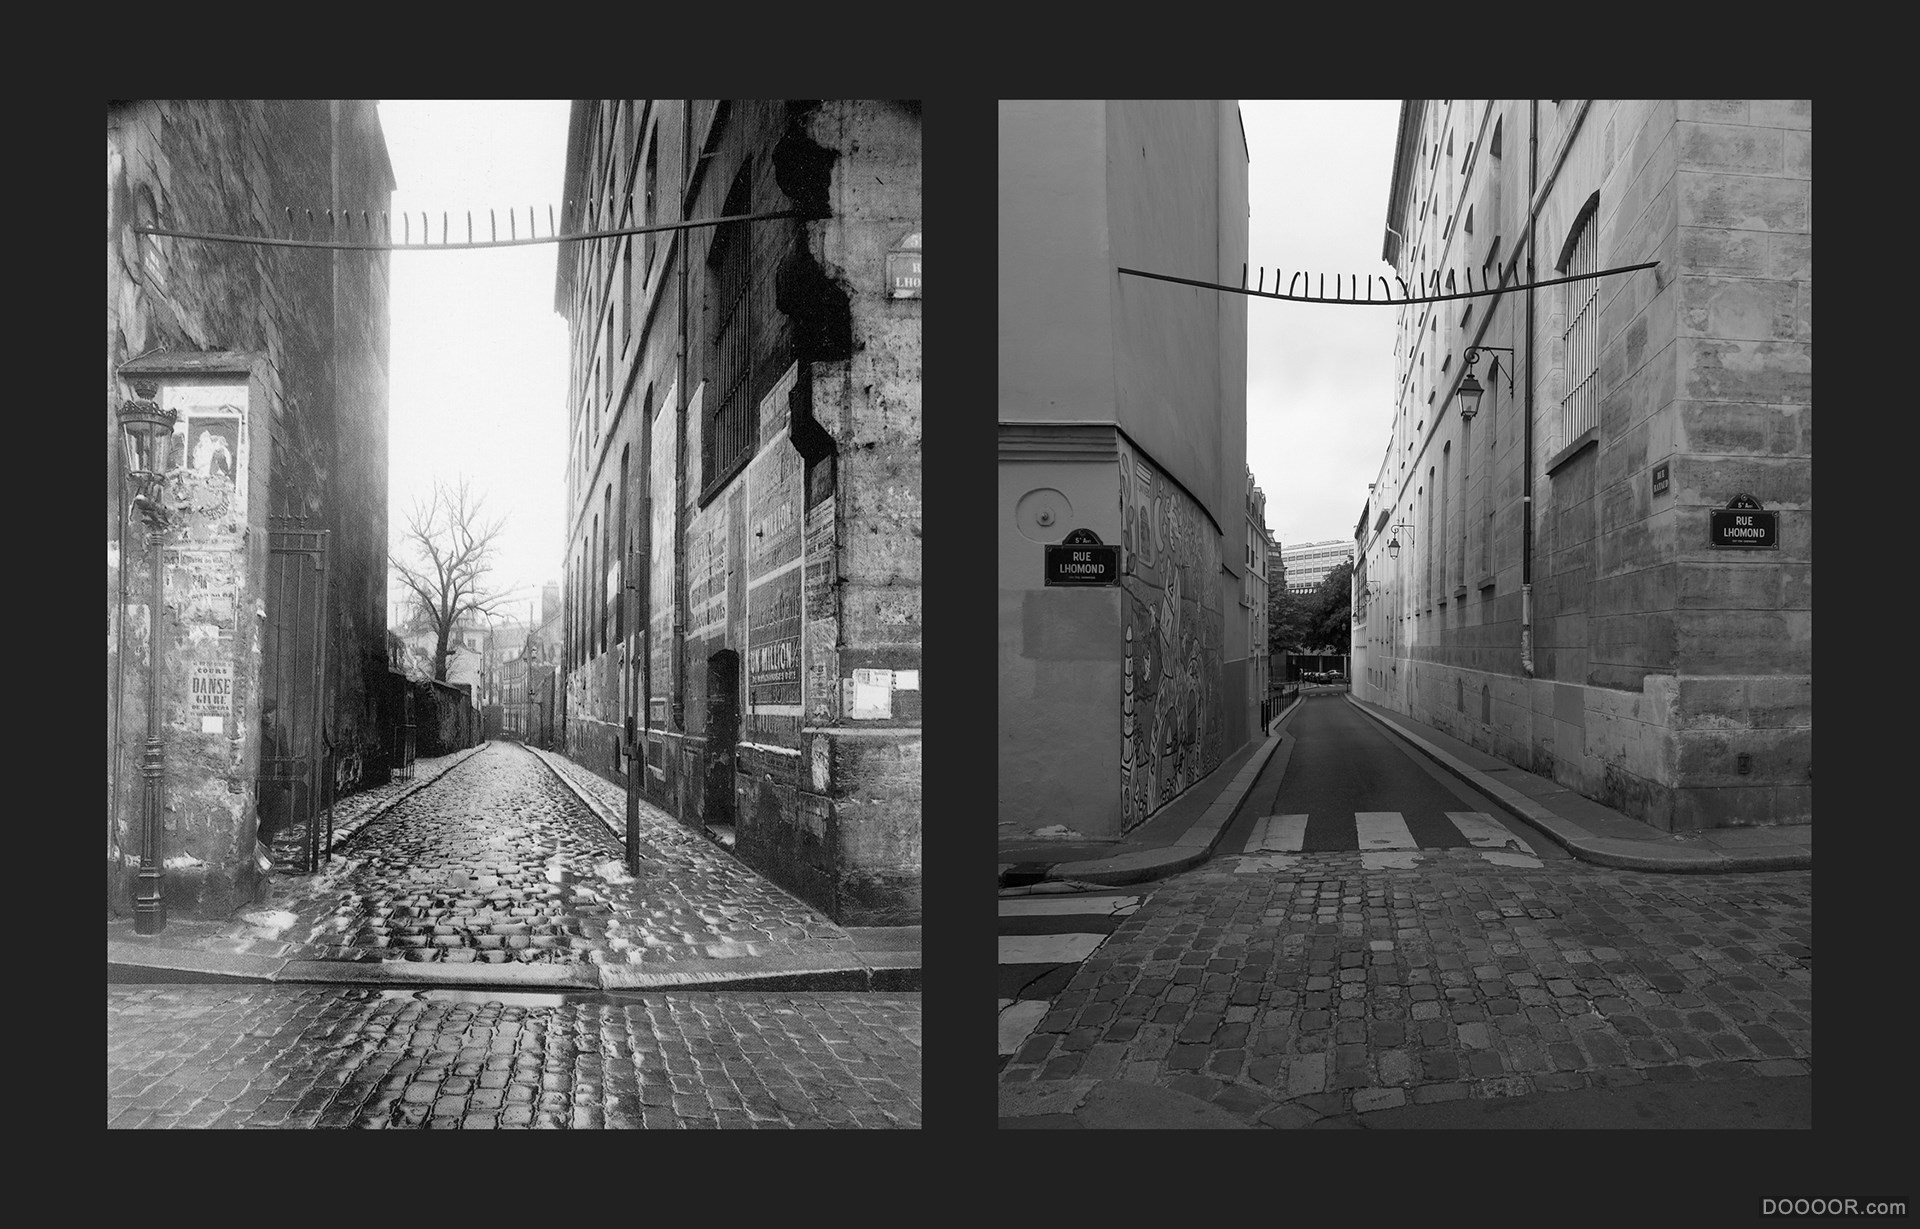 过去与现在-巴黎街头照片对比 [50P] (14).jpg